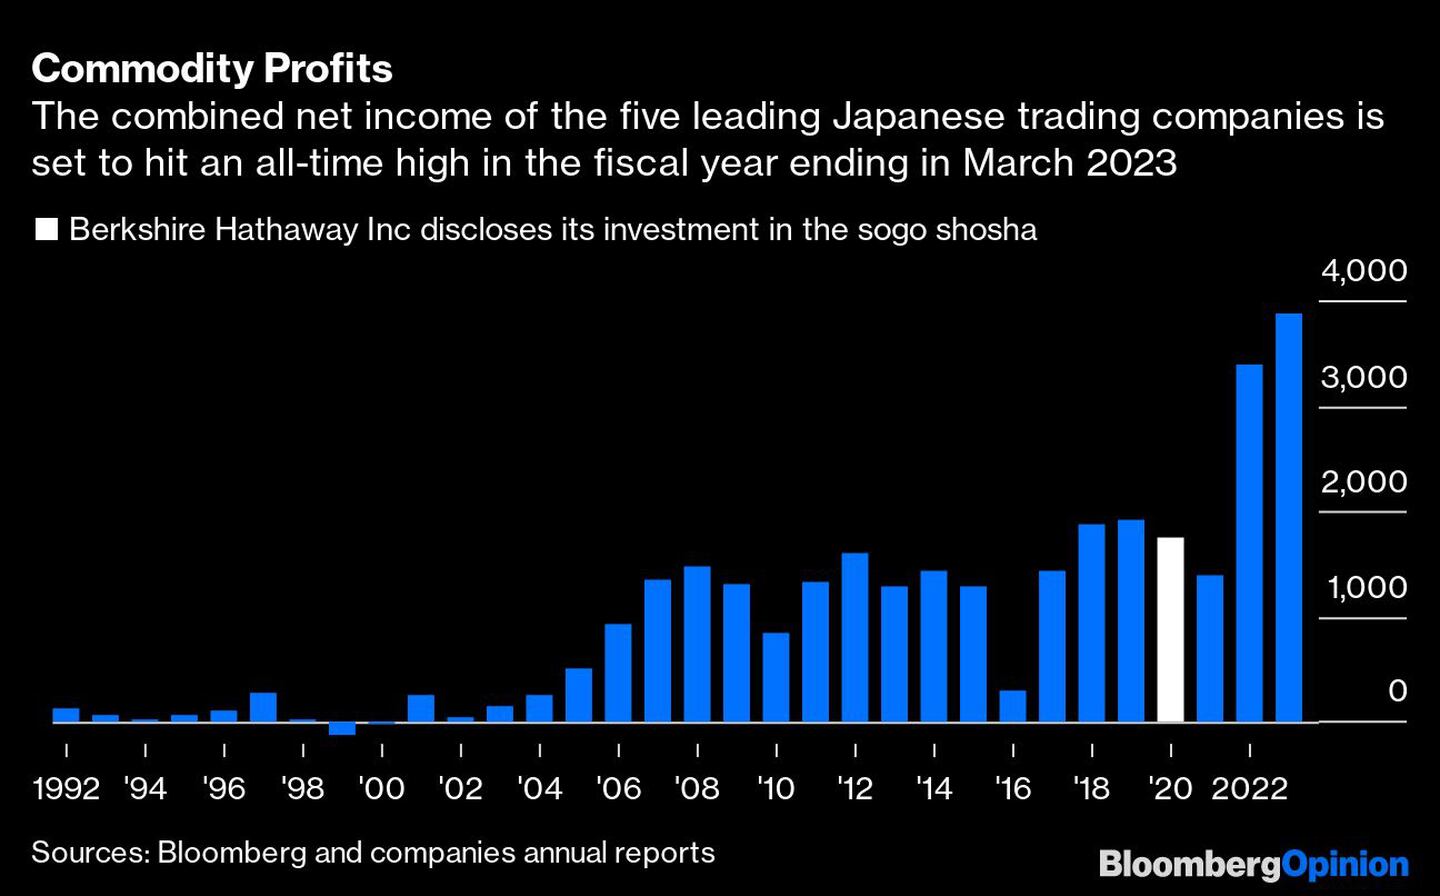 Los ingresos netos de las cincos principales compañías de trading de Japón se encaminan a lograr un récord histórico en el año fiscal que termina en 2023dfd